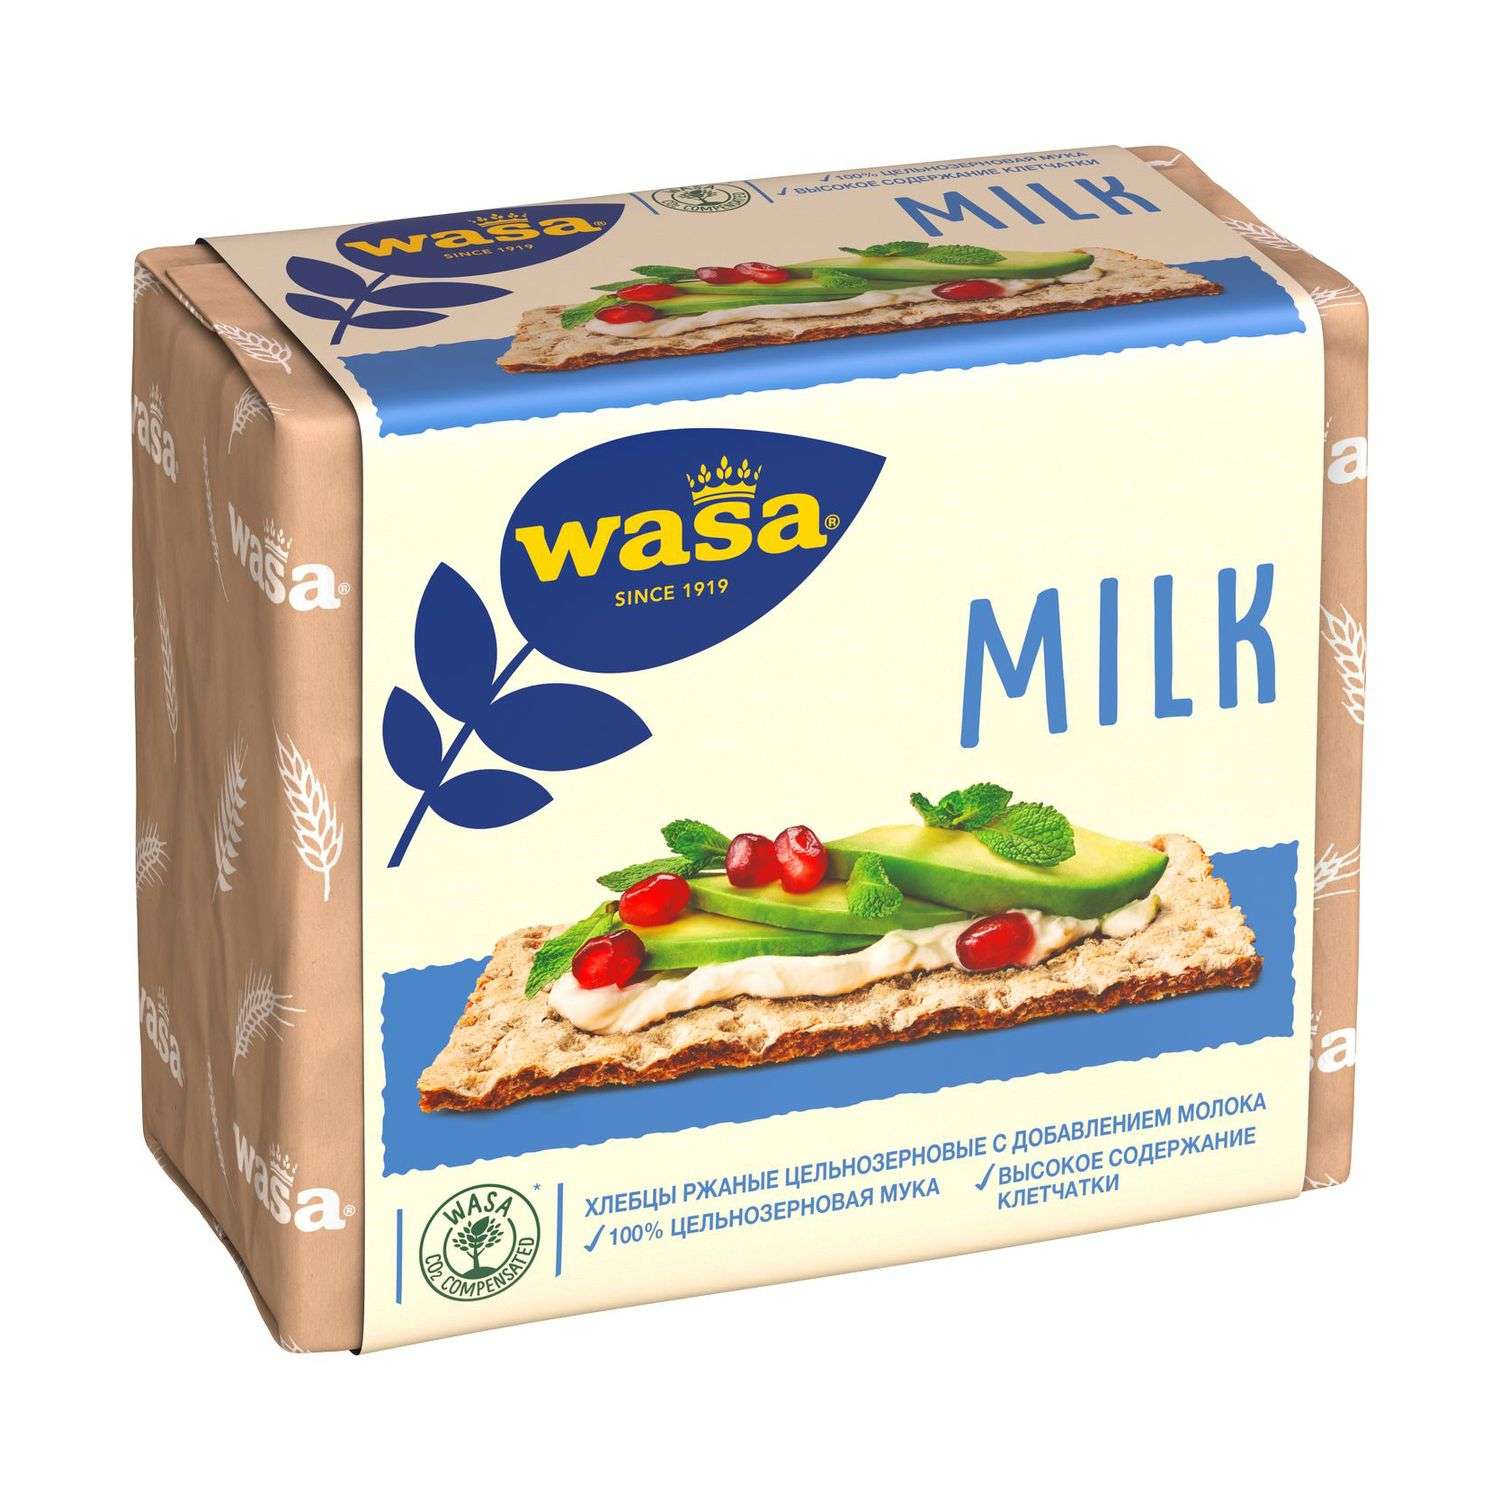 Хлебцы Wasa ржаные из цельнозерновой муки с молоком 230г - фото 2